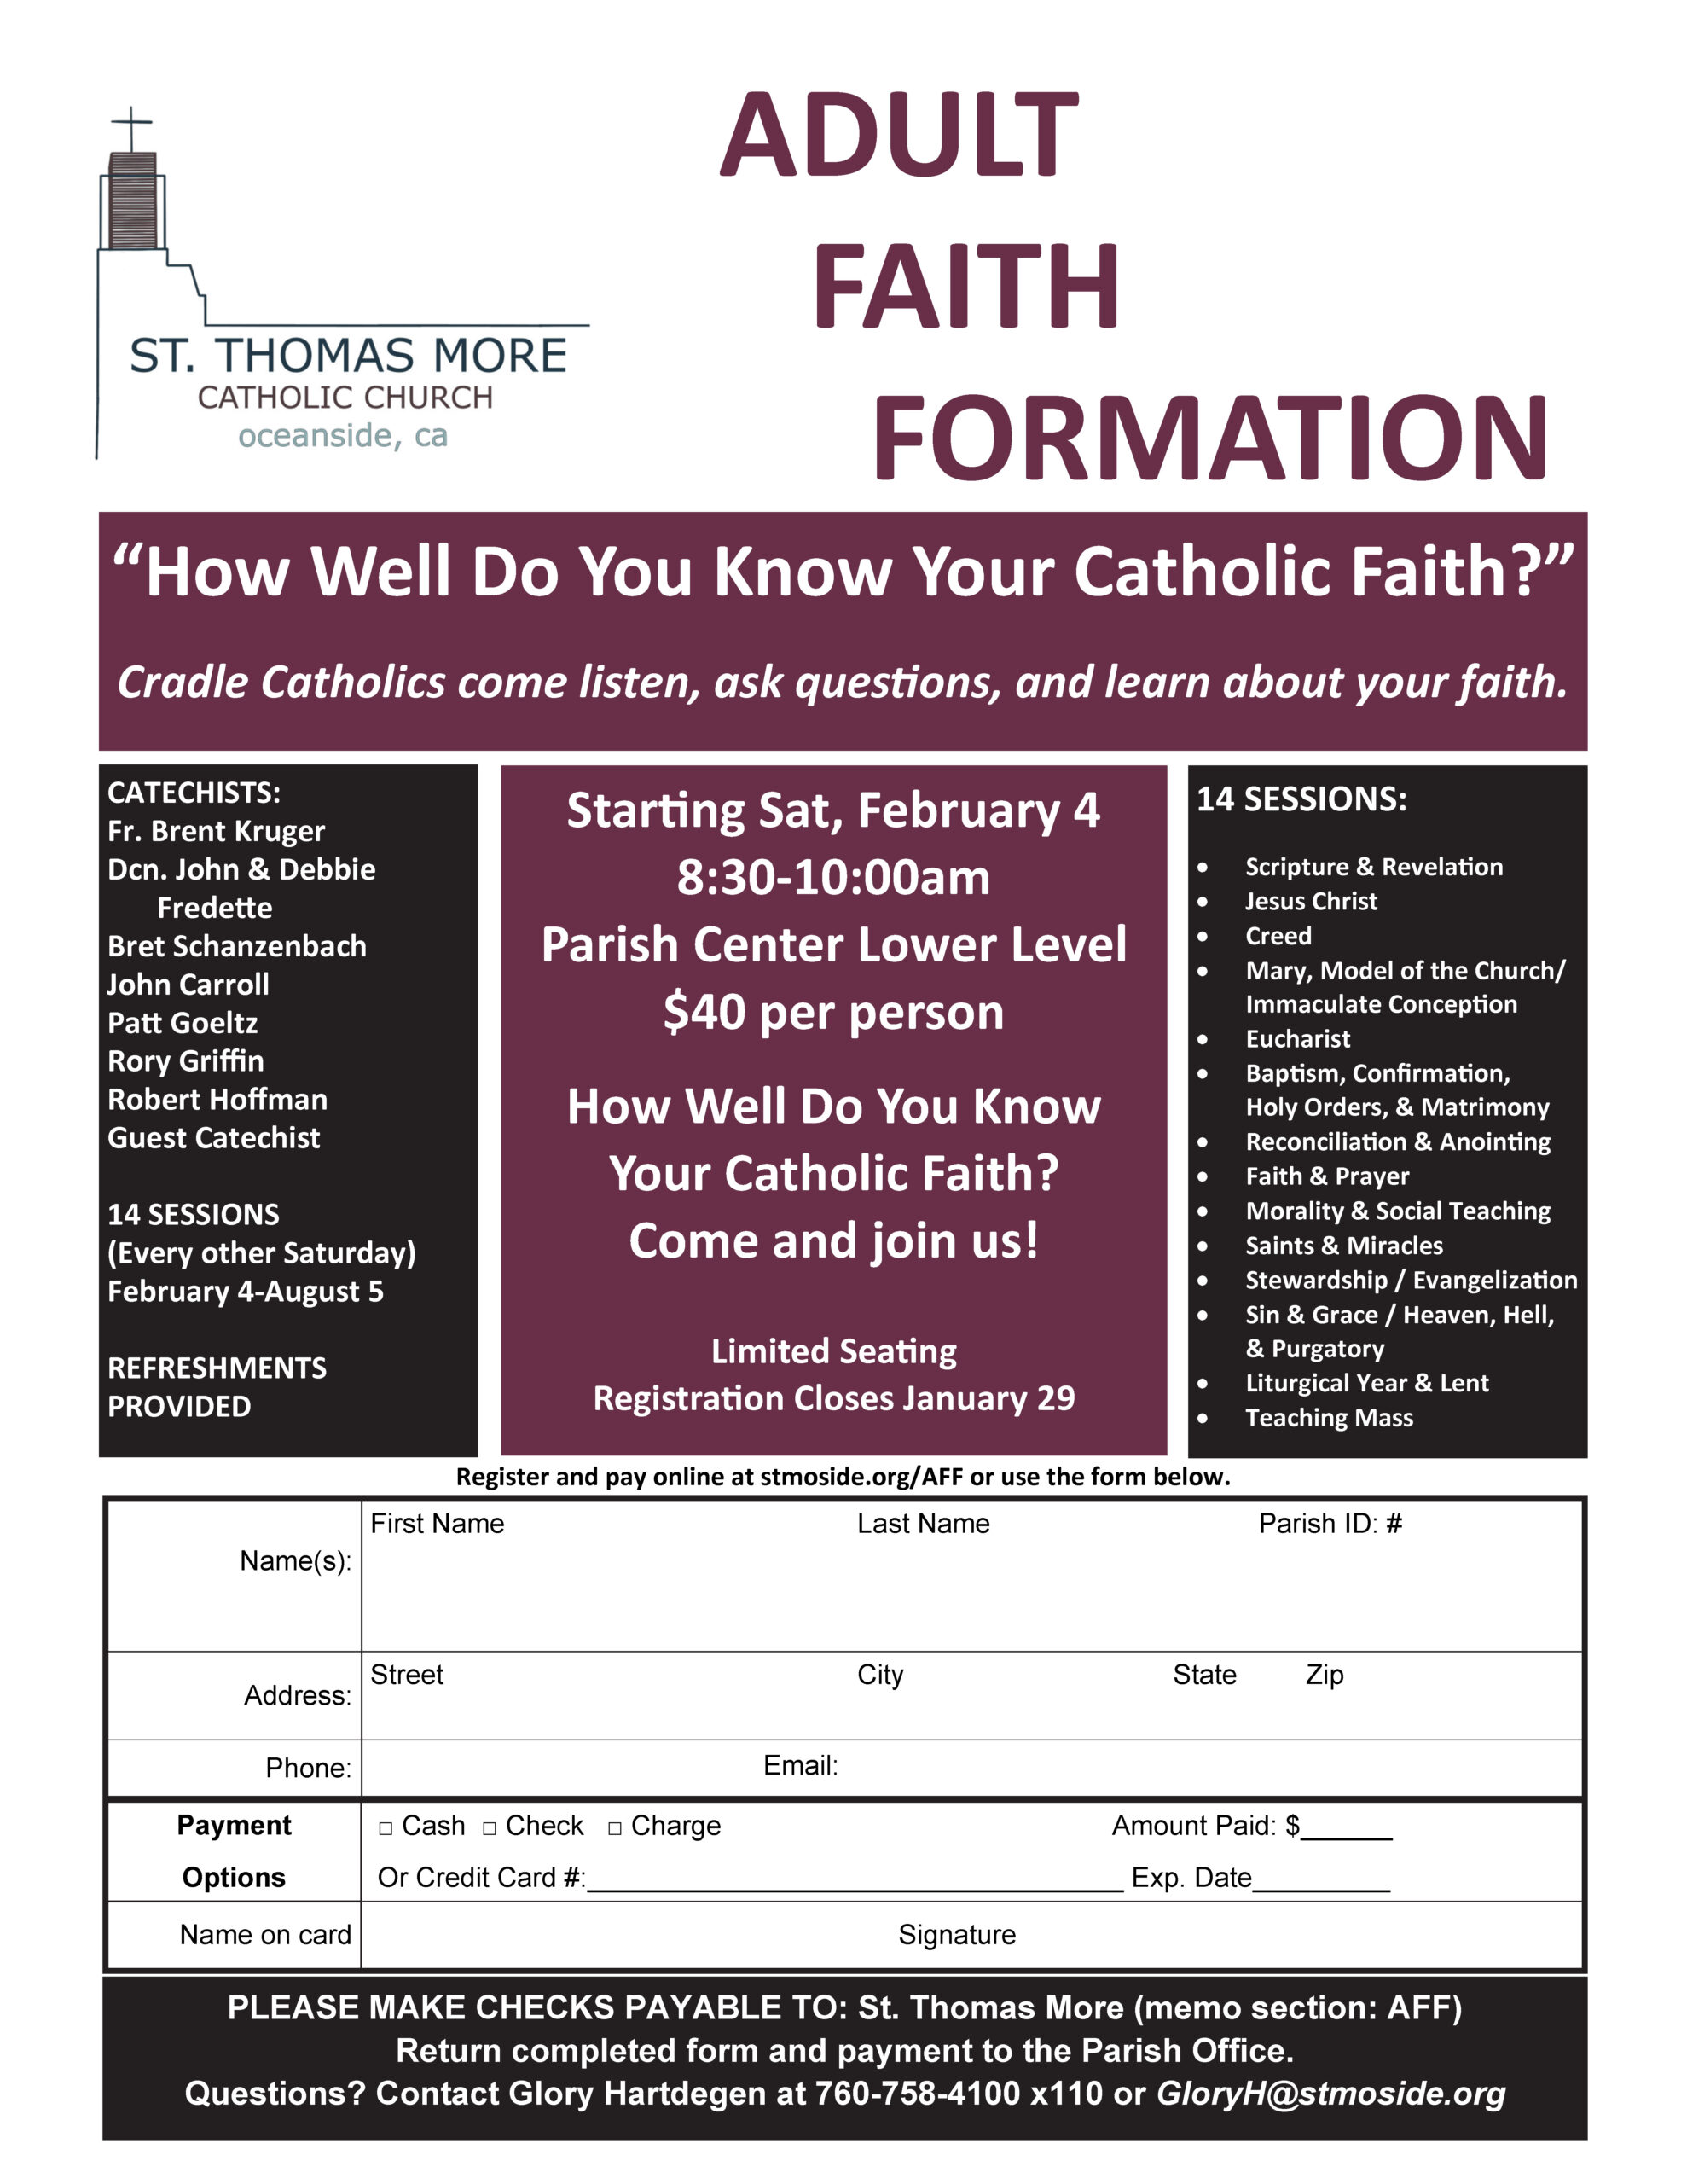 Adult Faith Formation Course